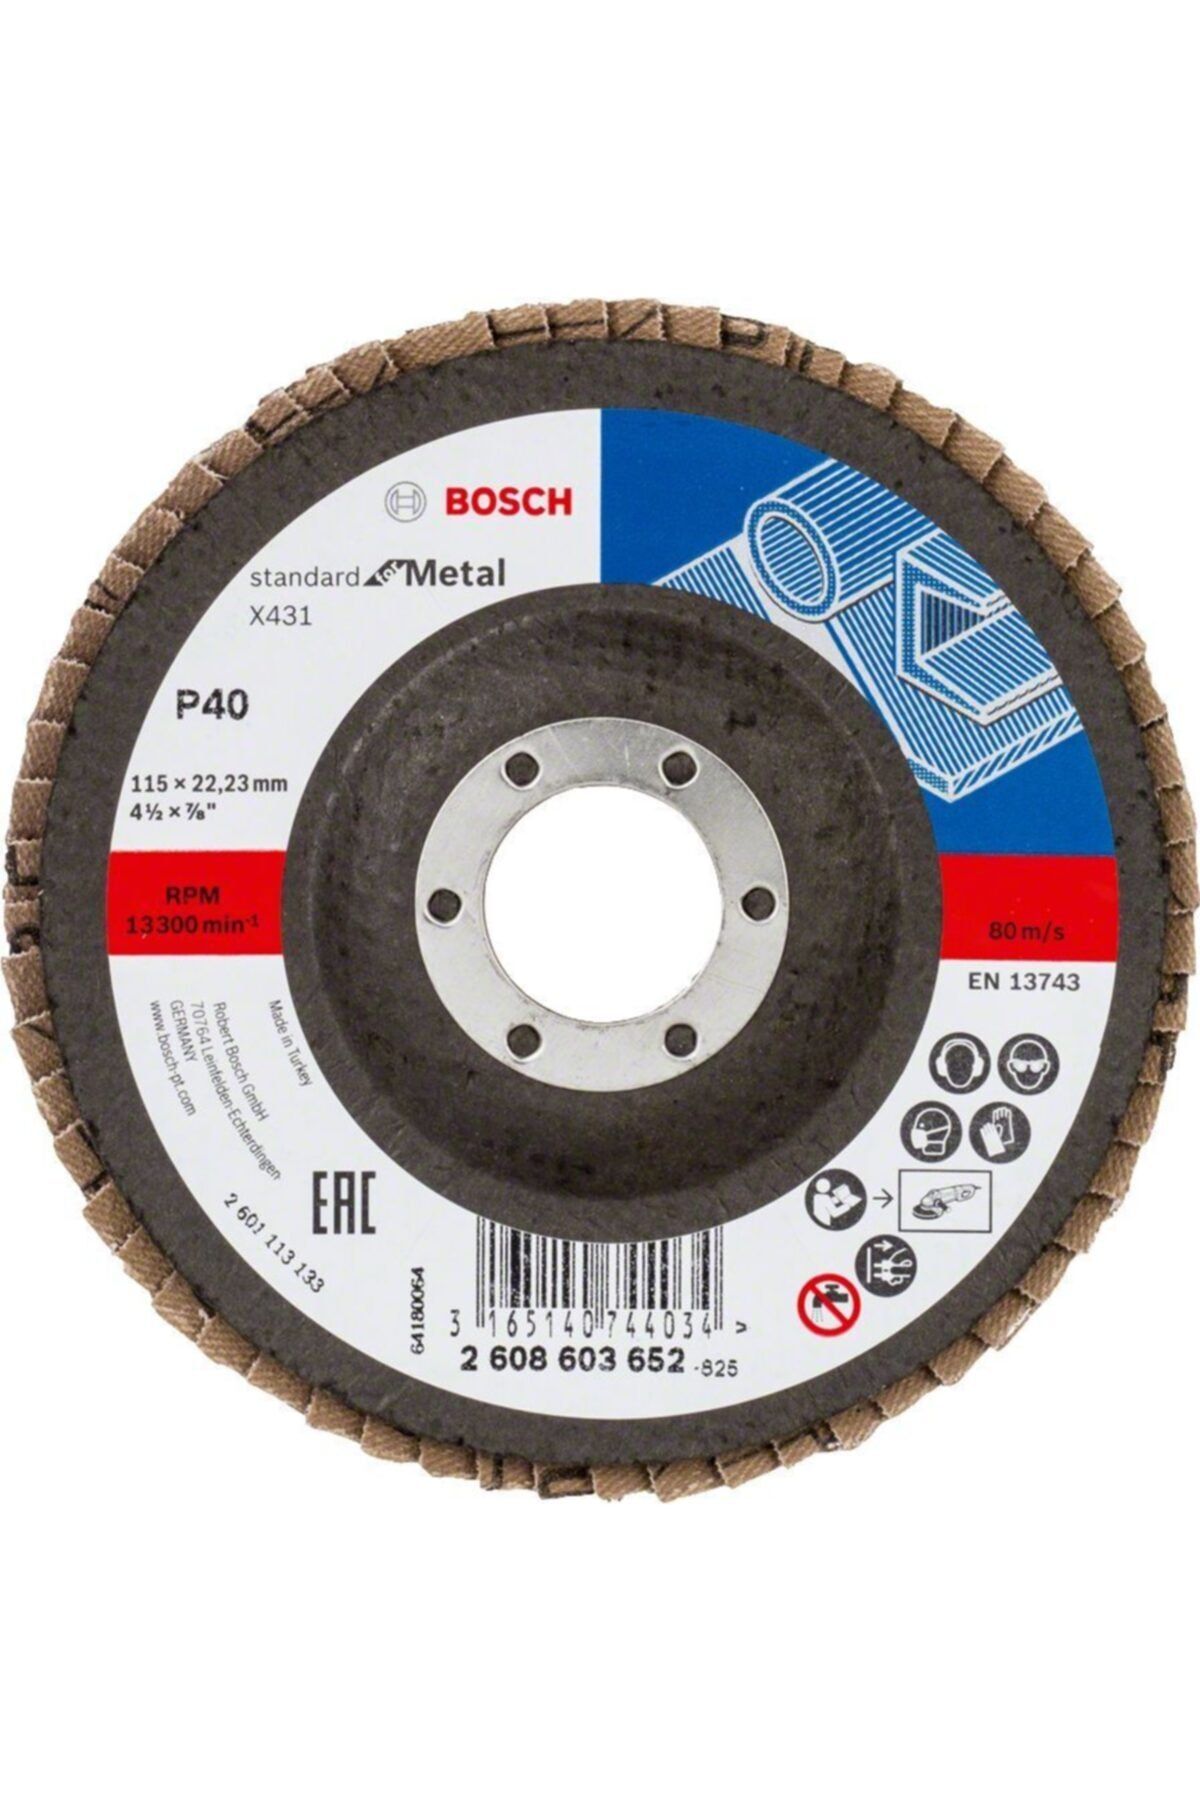 Bosch - 115 Mm 120 Kum X431 Alox Flap Disk